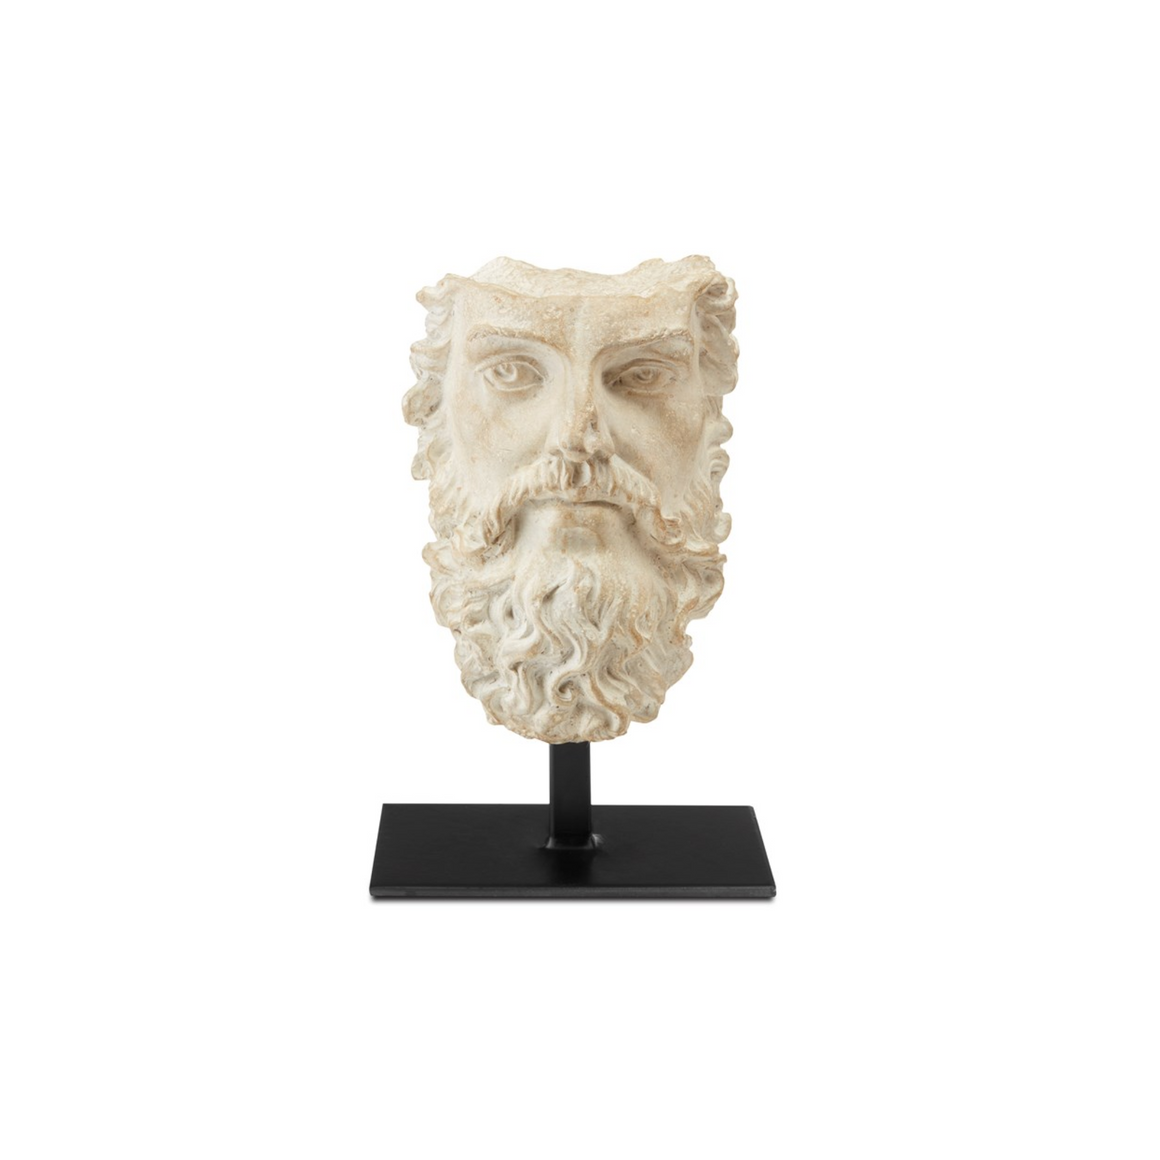 Head of Zeus Sculpture